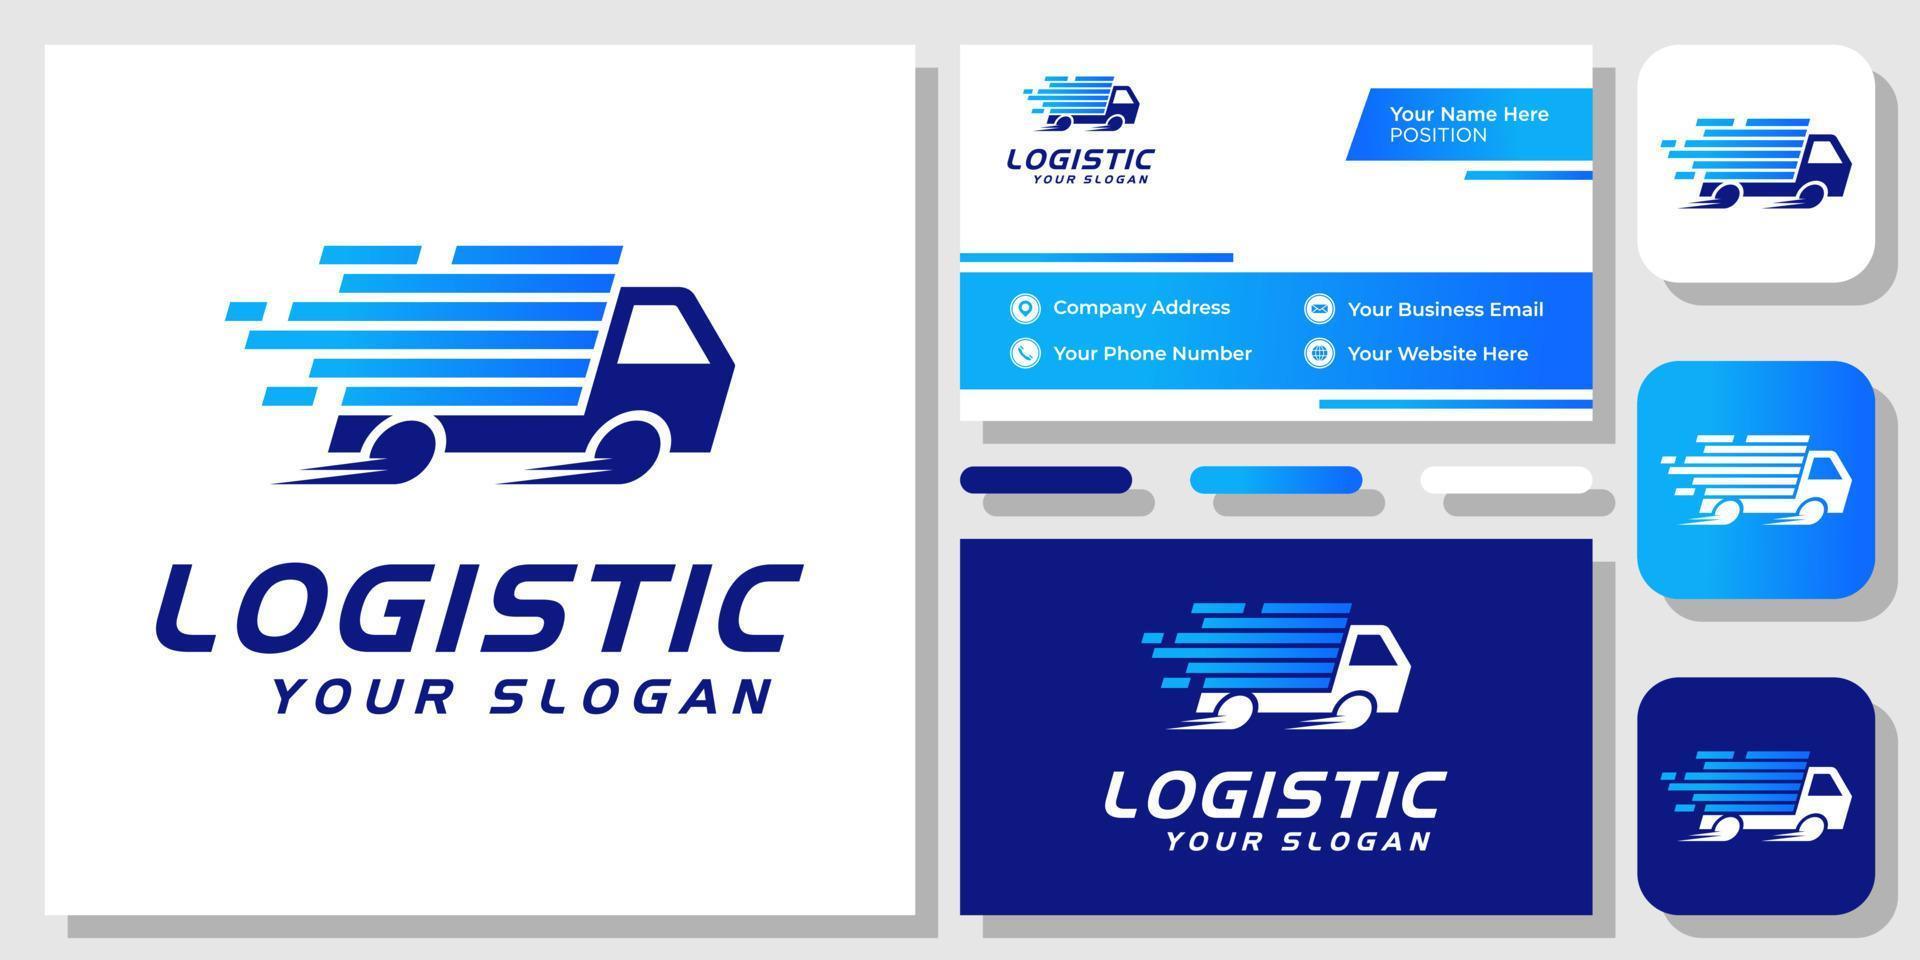 Auto-Kasten-LKW-Logistik-Kurier-Lieferung Versand-Express-Fracht-Logo-Design mit Visitenkartenvorlage vektor